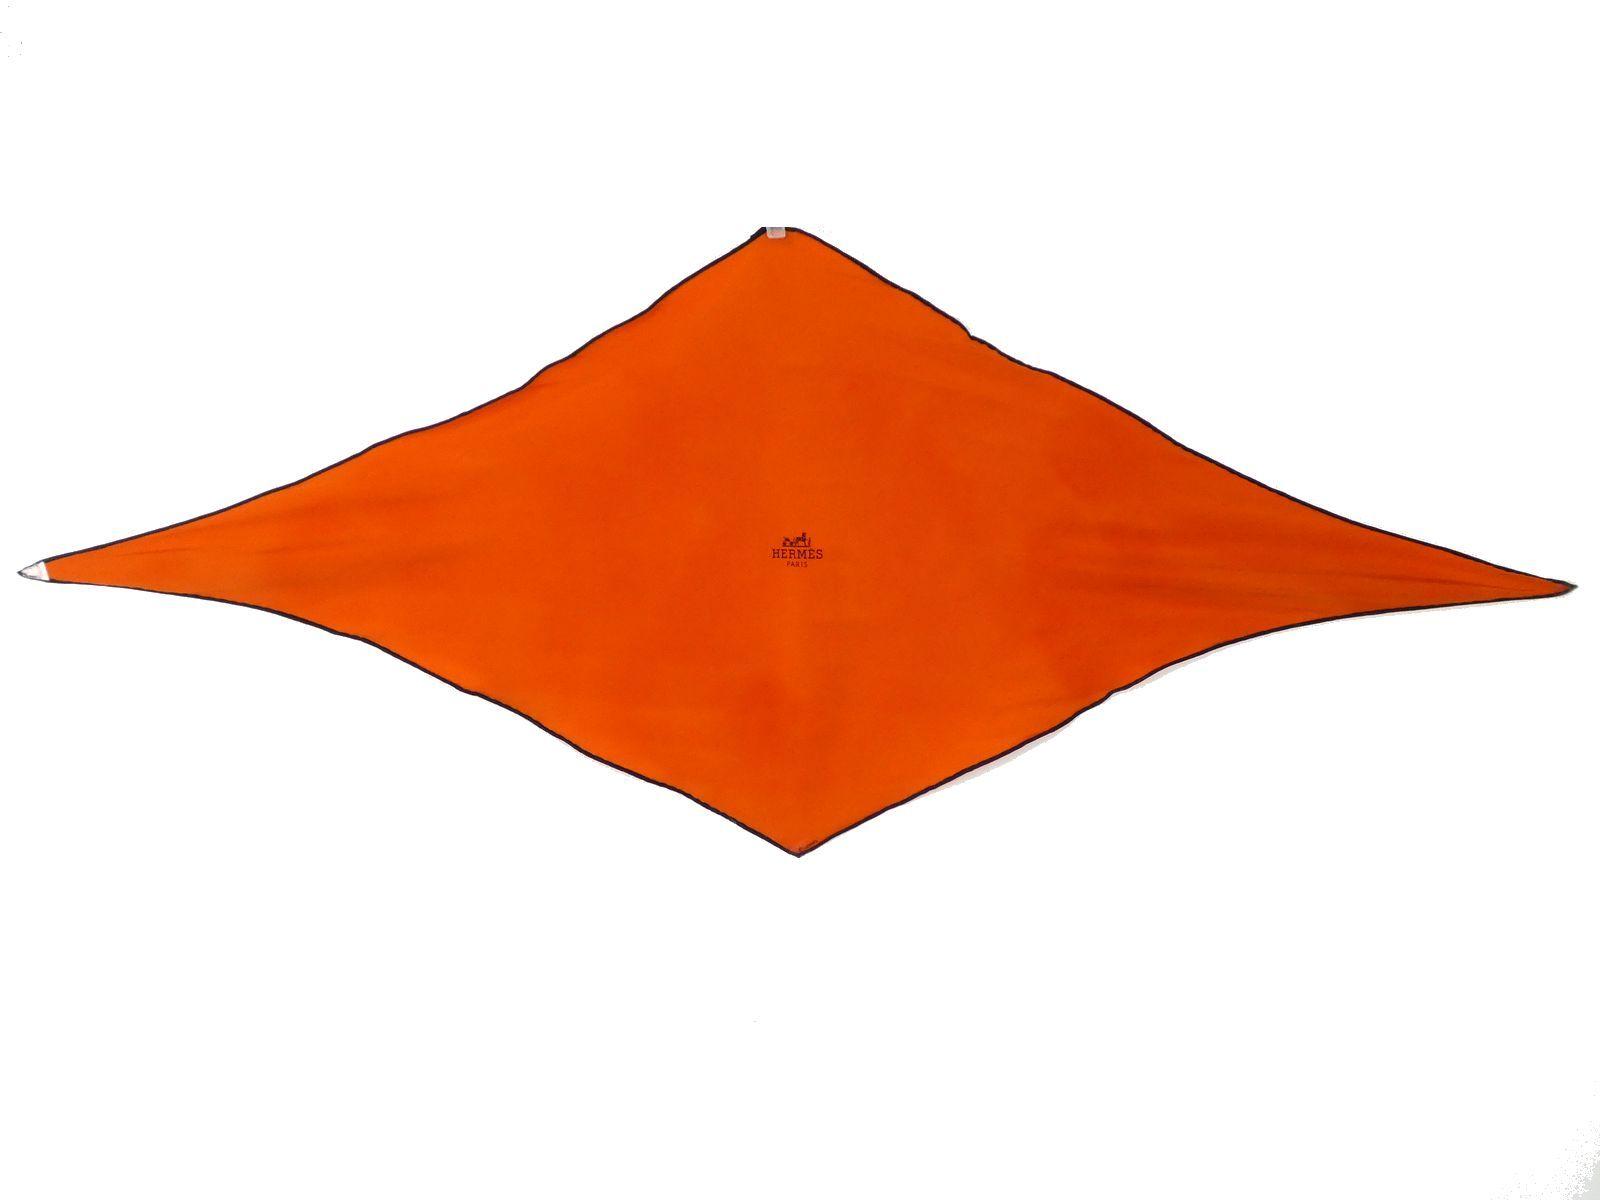 Orange Diamond Logo - BrandGift: Q856 constant seller popularity! Entering Hermes logo